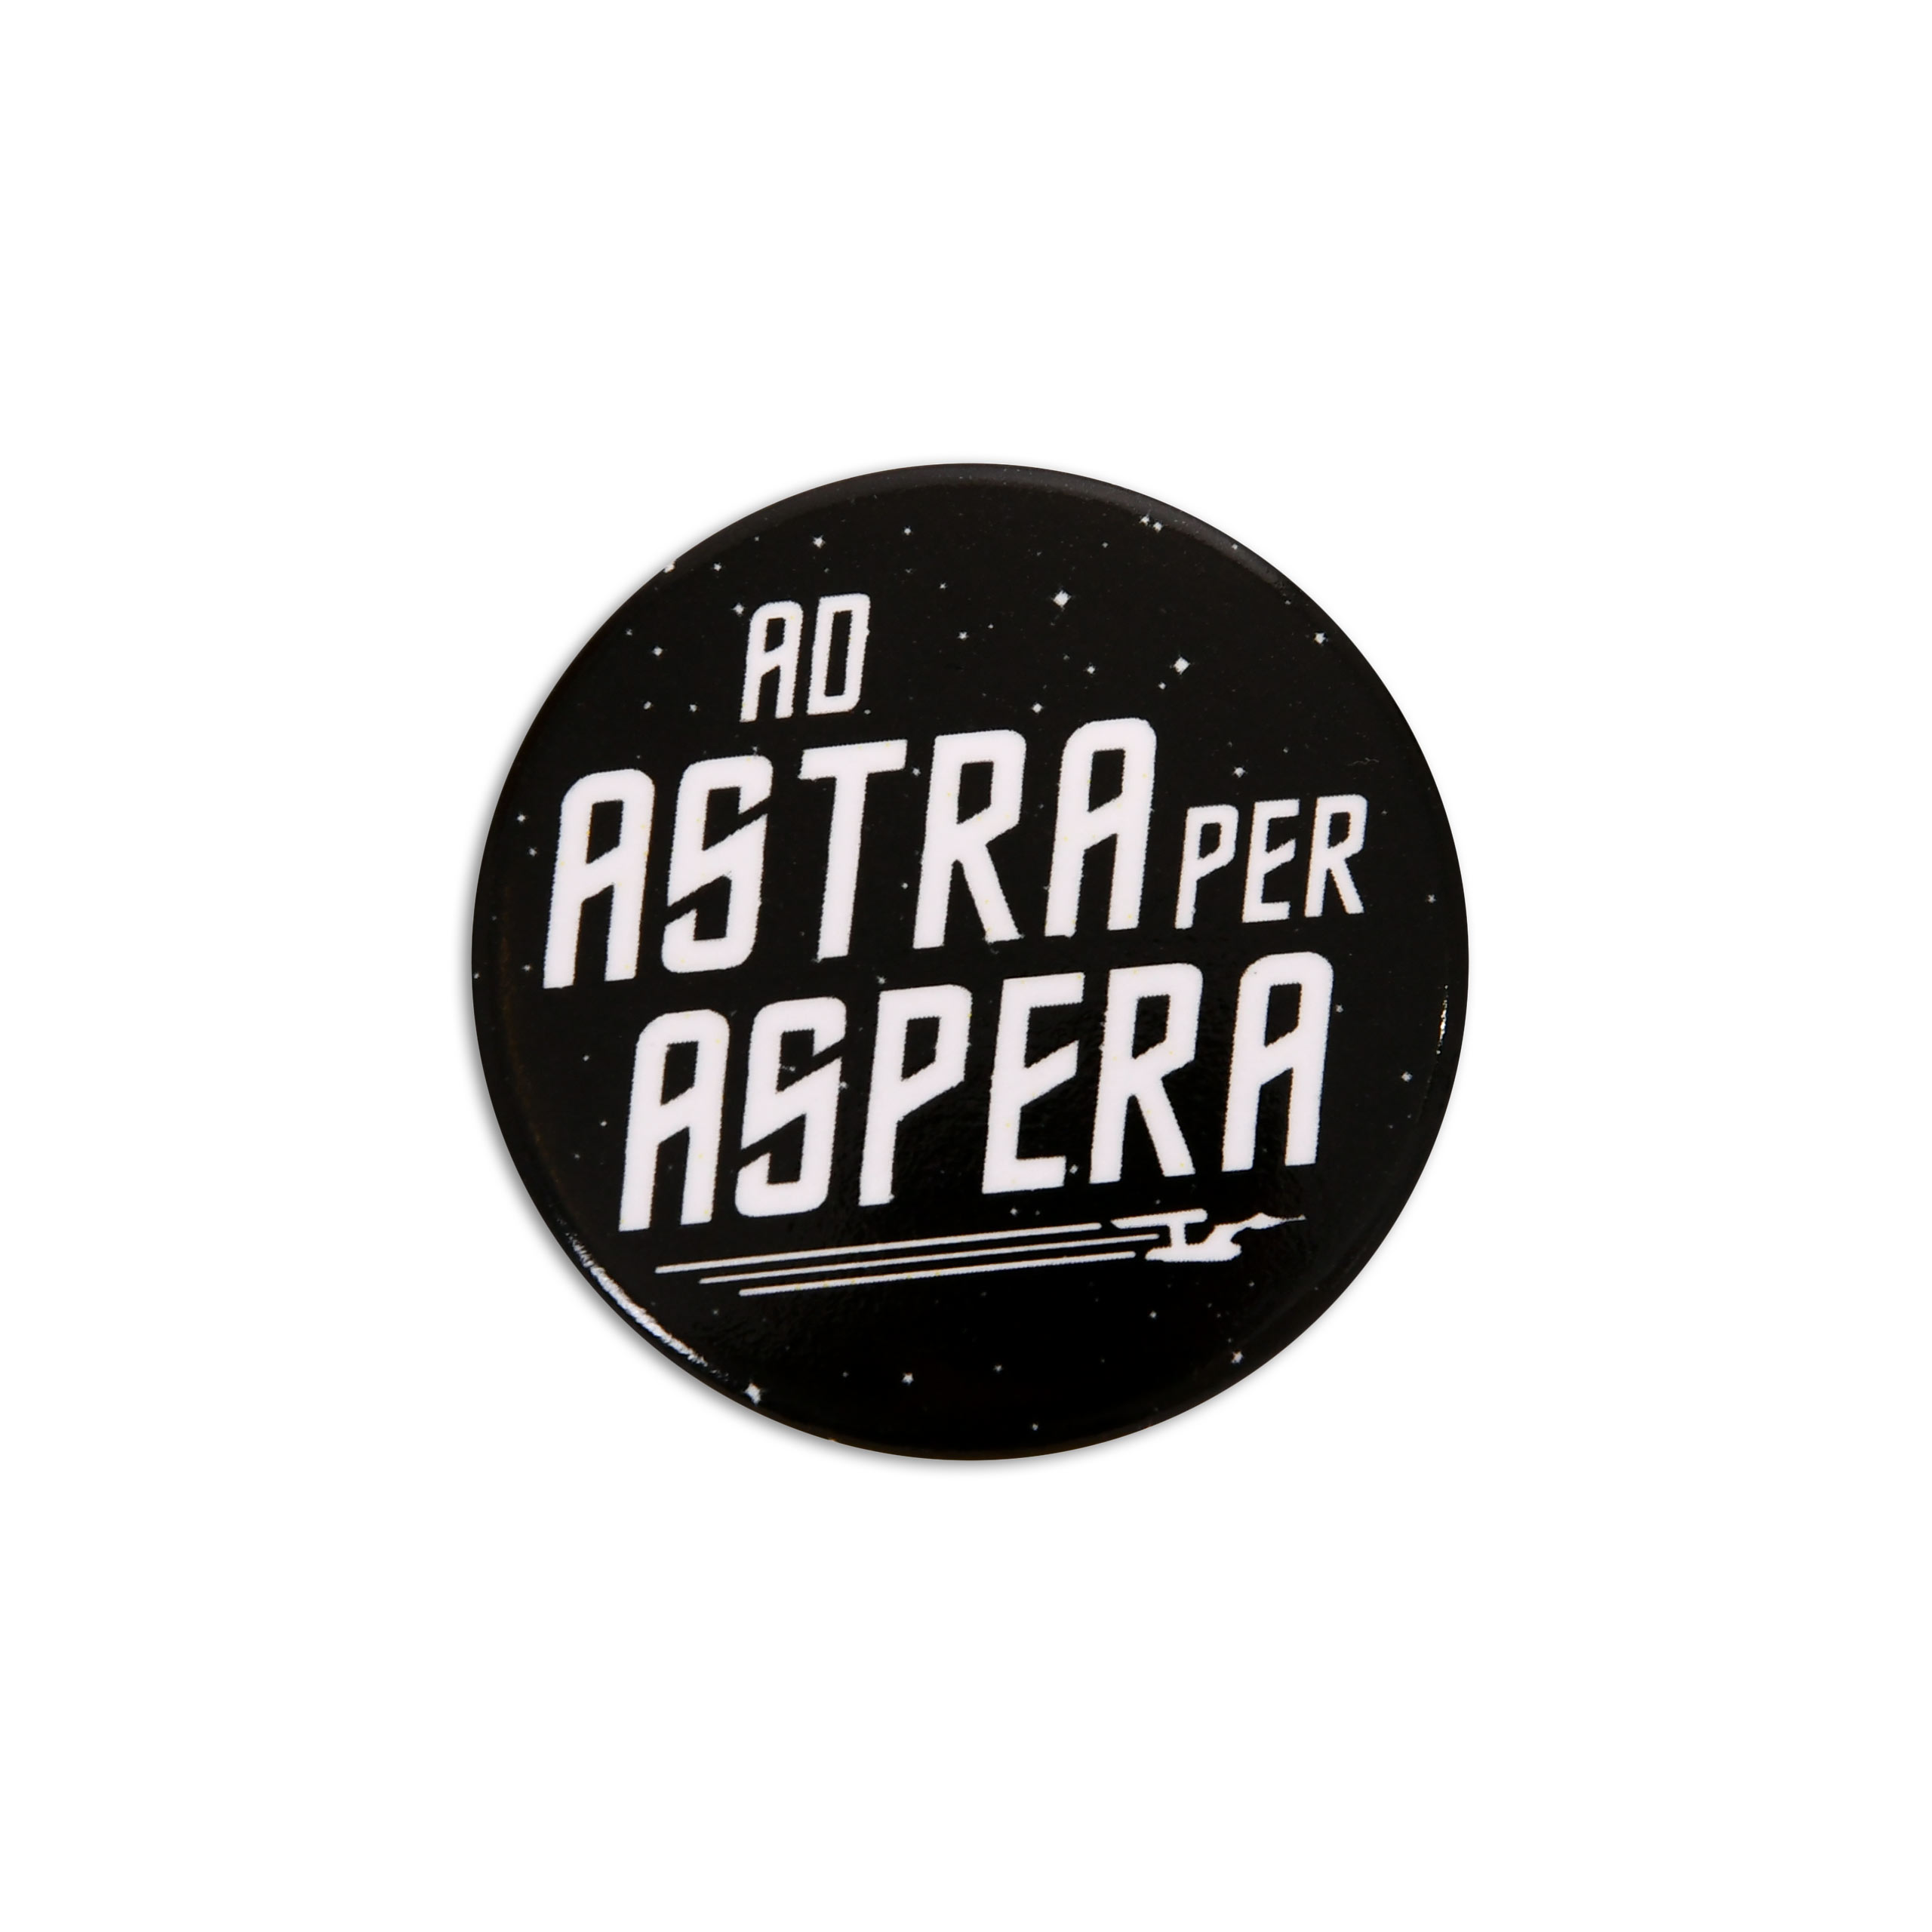 Ad Astra Per Aspera Button für Star Trek Fans